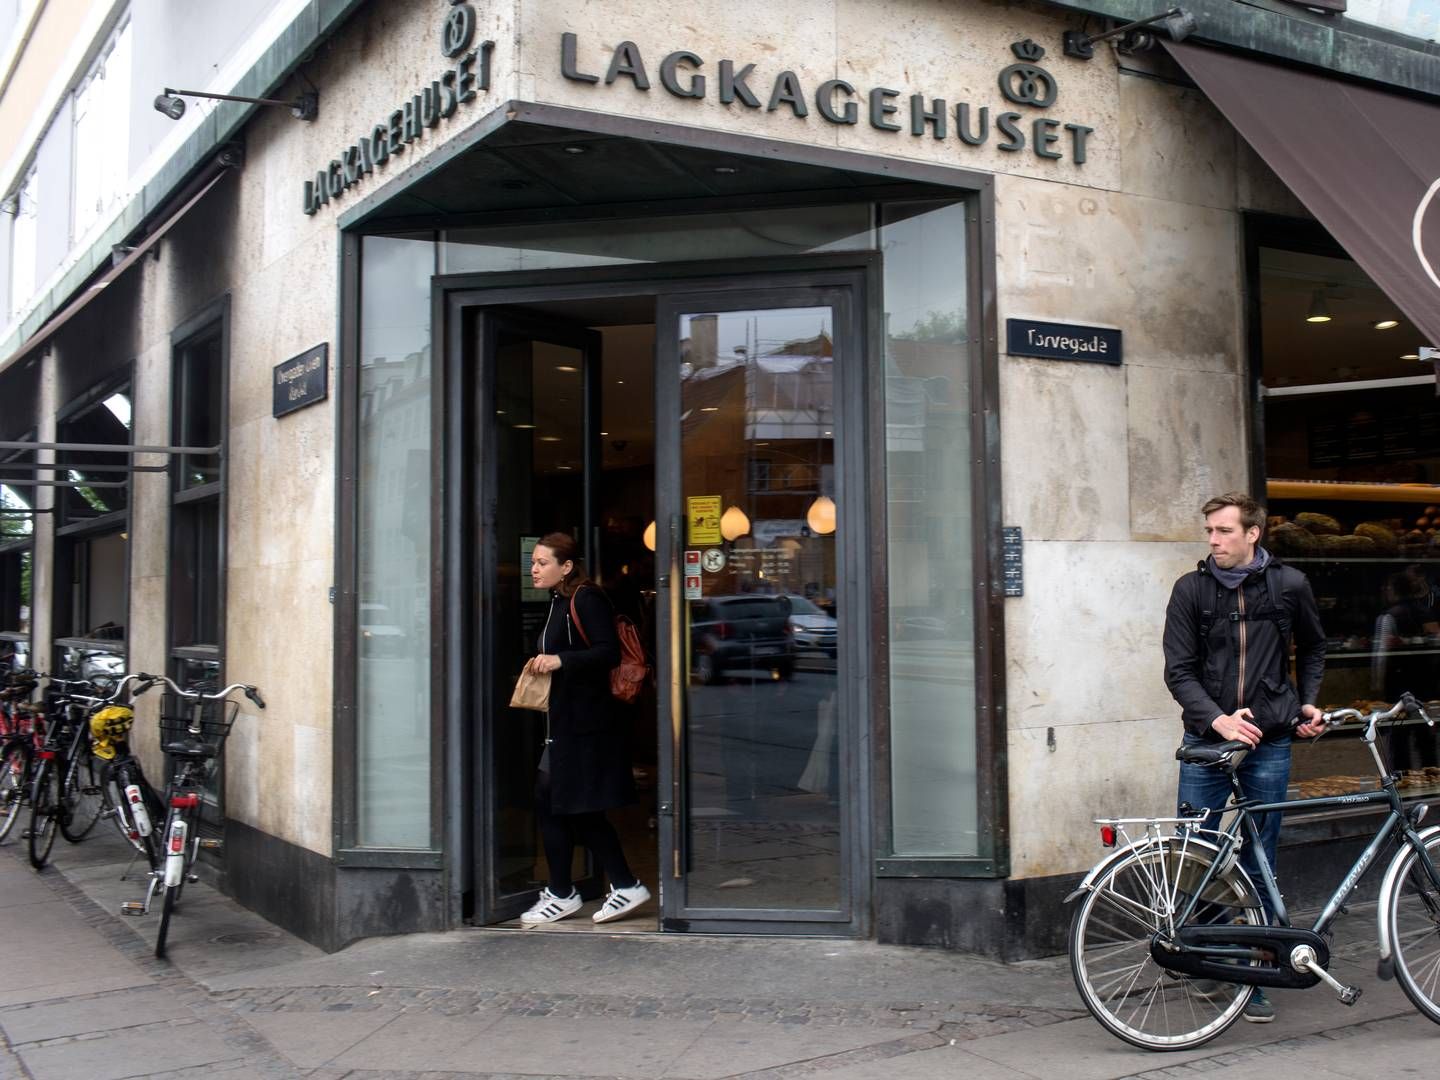 Den første af Lagkagehusets forretninger åbnede for 32 år siden på Christianshavn. Siden to kapitalfonde tog over i 2017, er der blevet skudt 1,45 mia. kr. i forretningen. | Foto: Ivan Boll